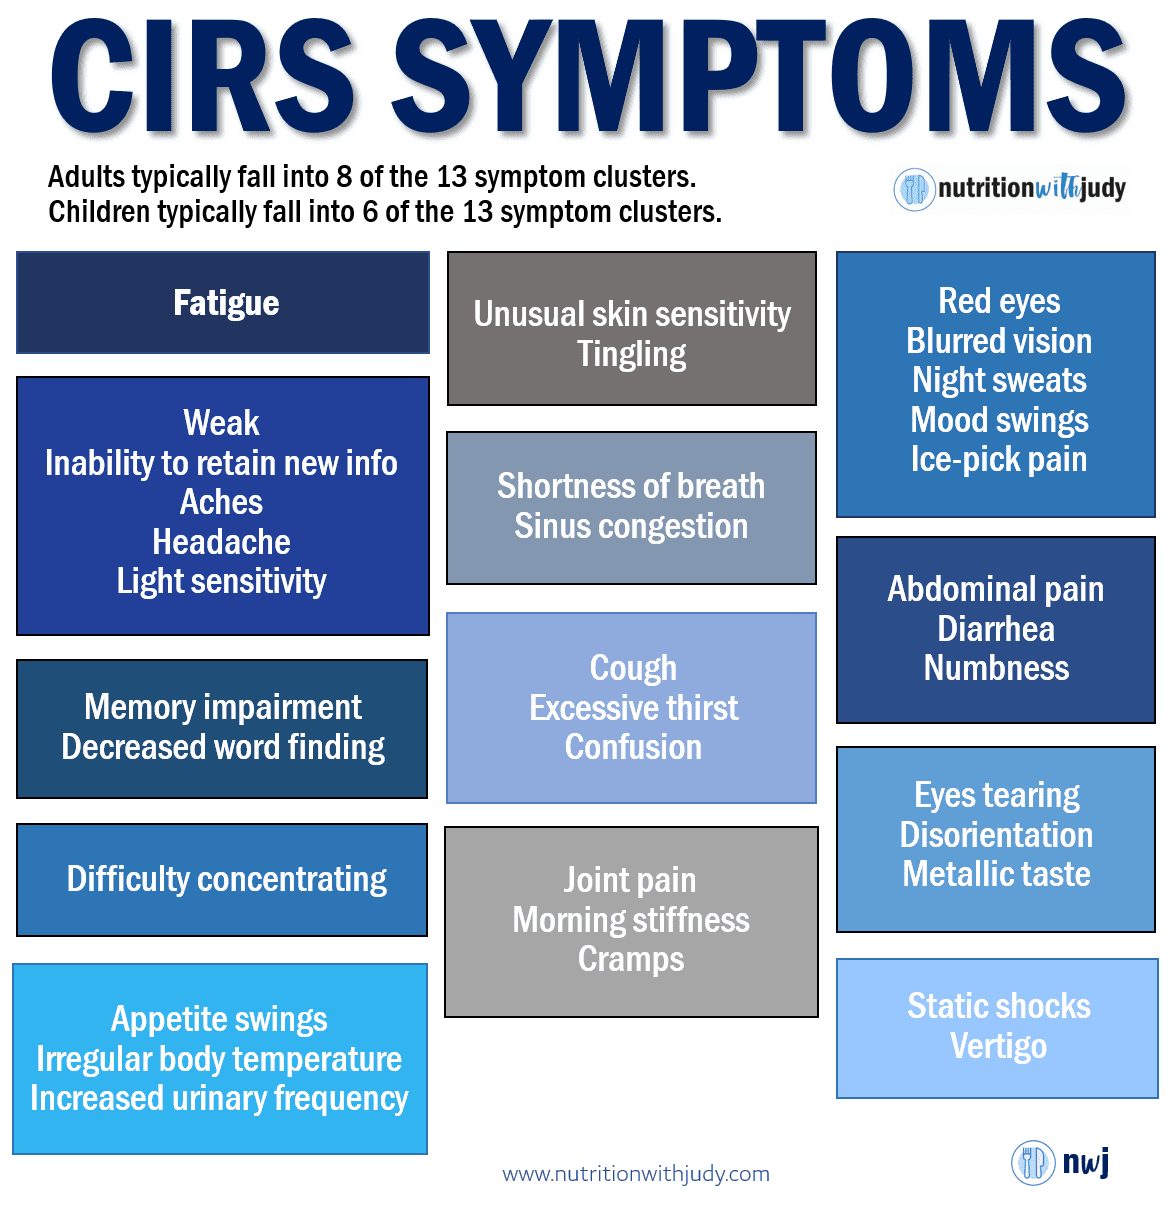 cirs symptoms